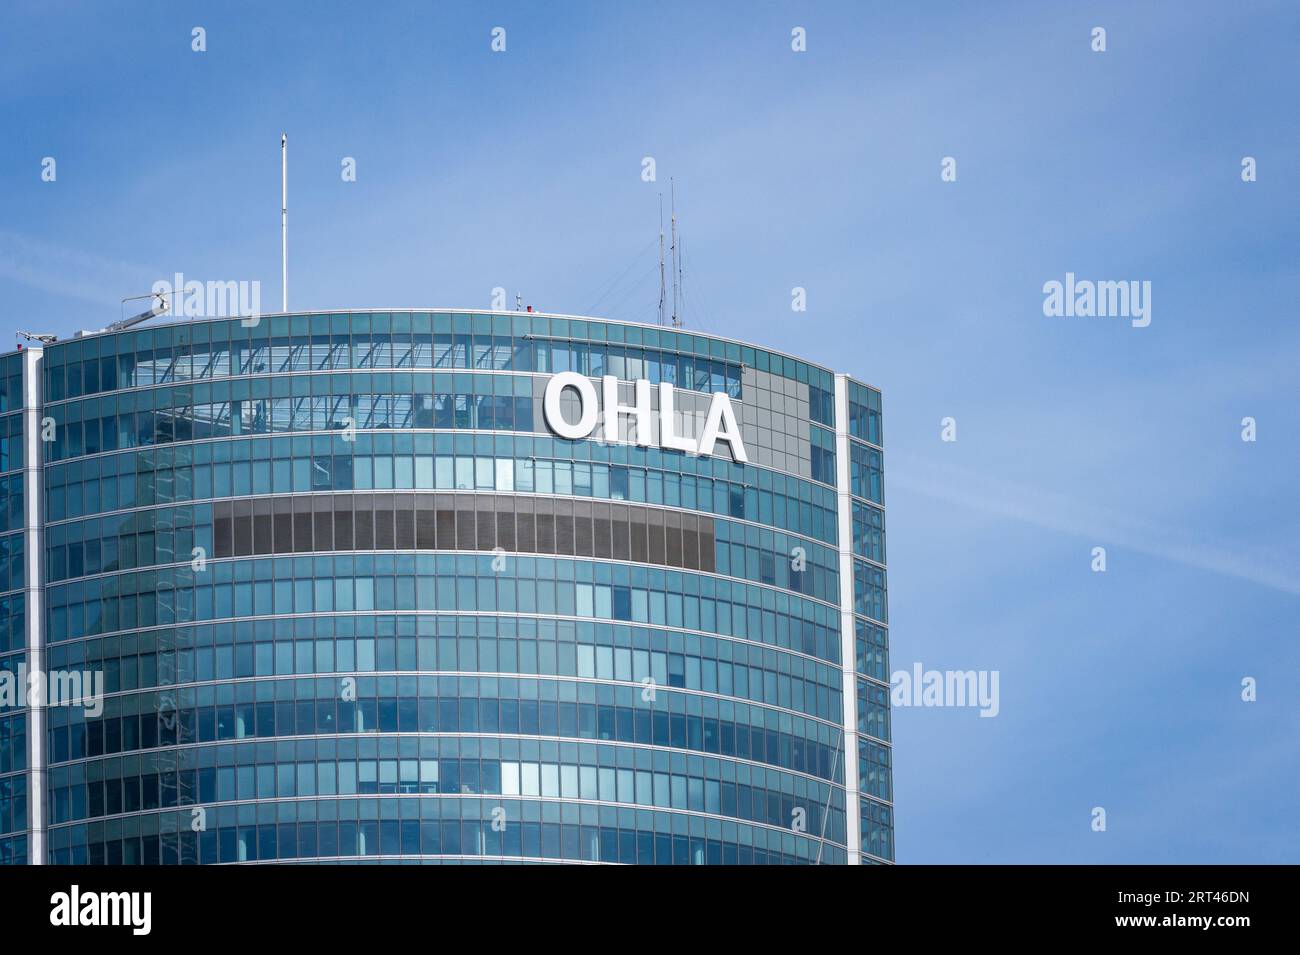 Der Turm Emperador Castellana (früher Torre Espacio), Hauptsitz des spanischen Bauunternehmens Ohla, im Finanzdistrikt Cuatro Torres Business Area (CTBA) in Madrid. Stockfoto